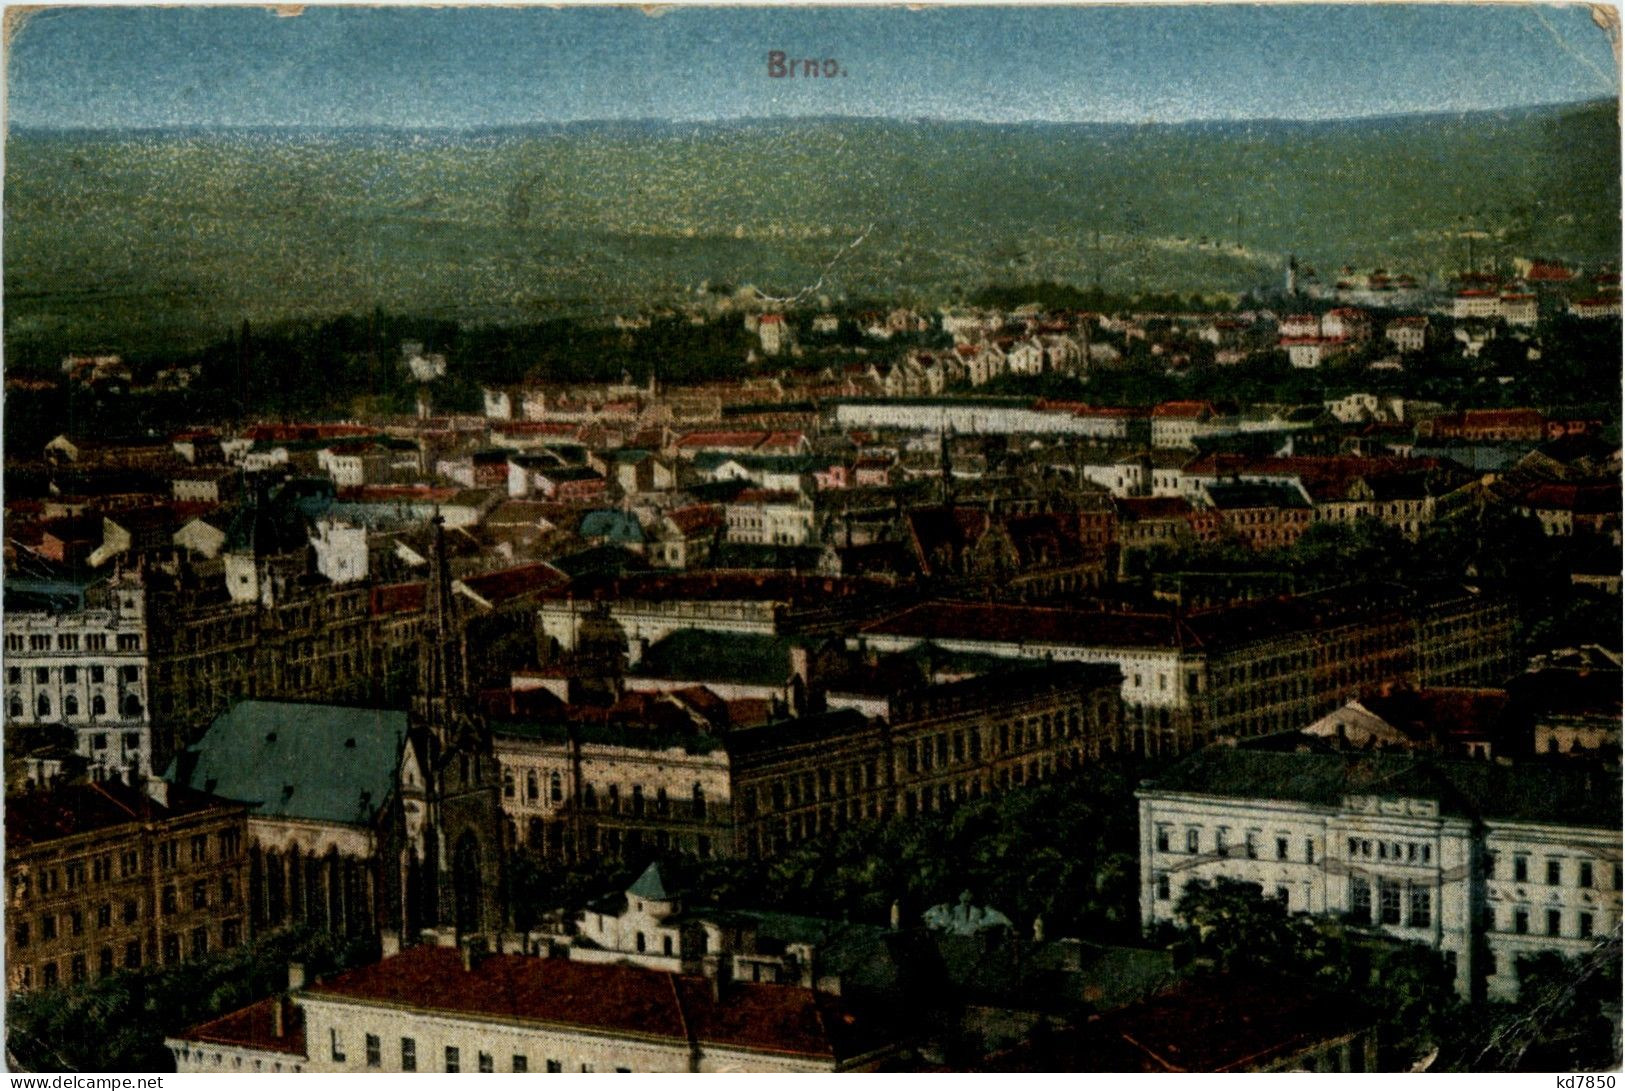 Brno - Tschechische Republik